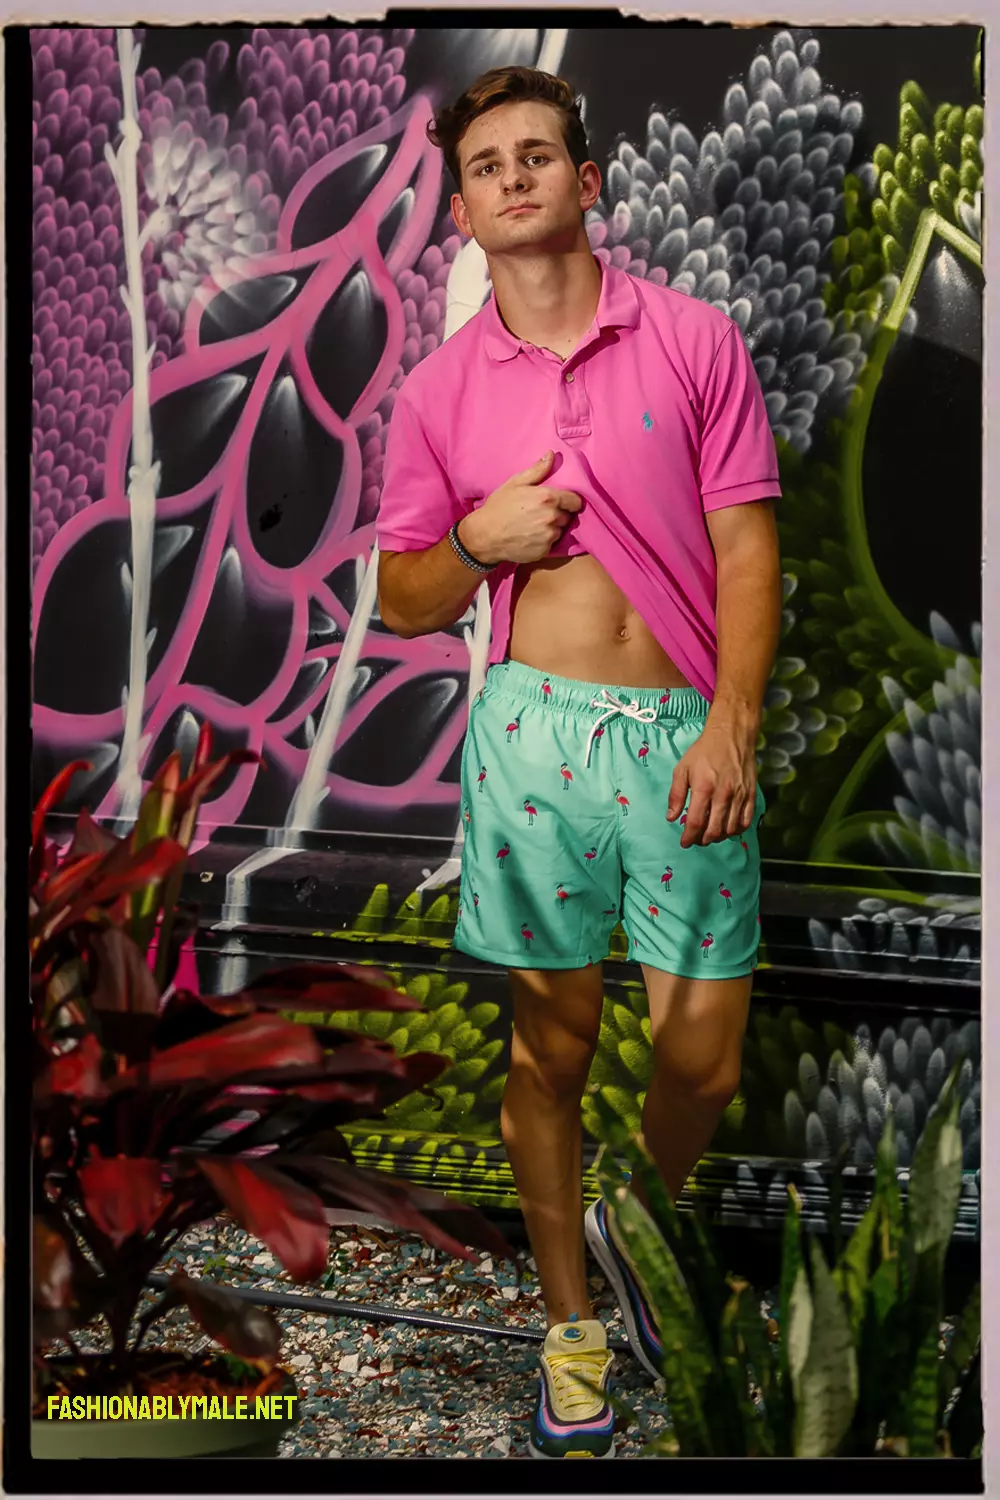 Vīrietis modelis / beisbola spēlētājs un viens no labākajiem Alabamas salā: Čeiss Kristians Stīvena Šmita attēlos, kas ir ekskluzīvi portālā fashionablymale.net